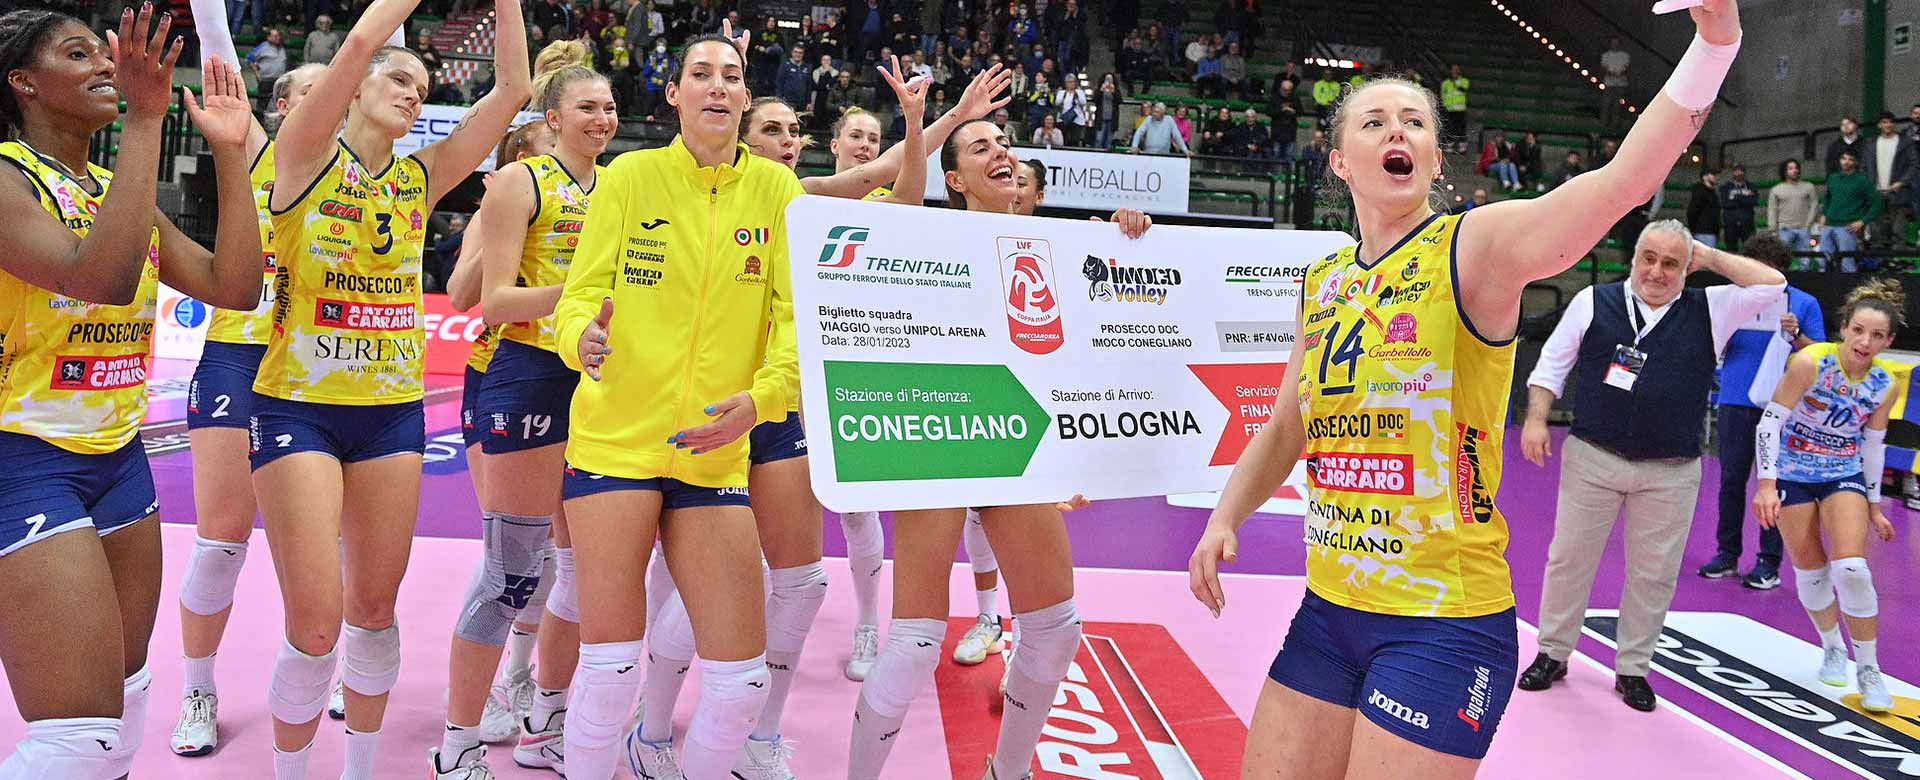 Imoco Volley festeggia l'accesso alle finali di Coppa Italia Frecciarossa con un biglietto gigante del treno